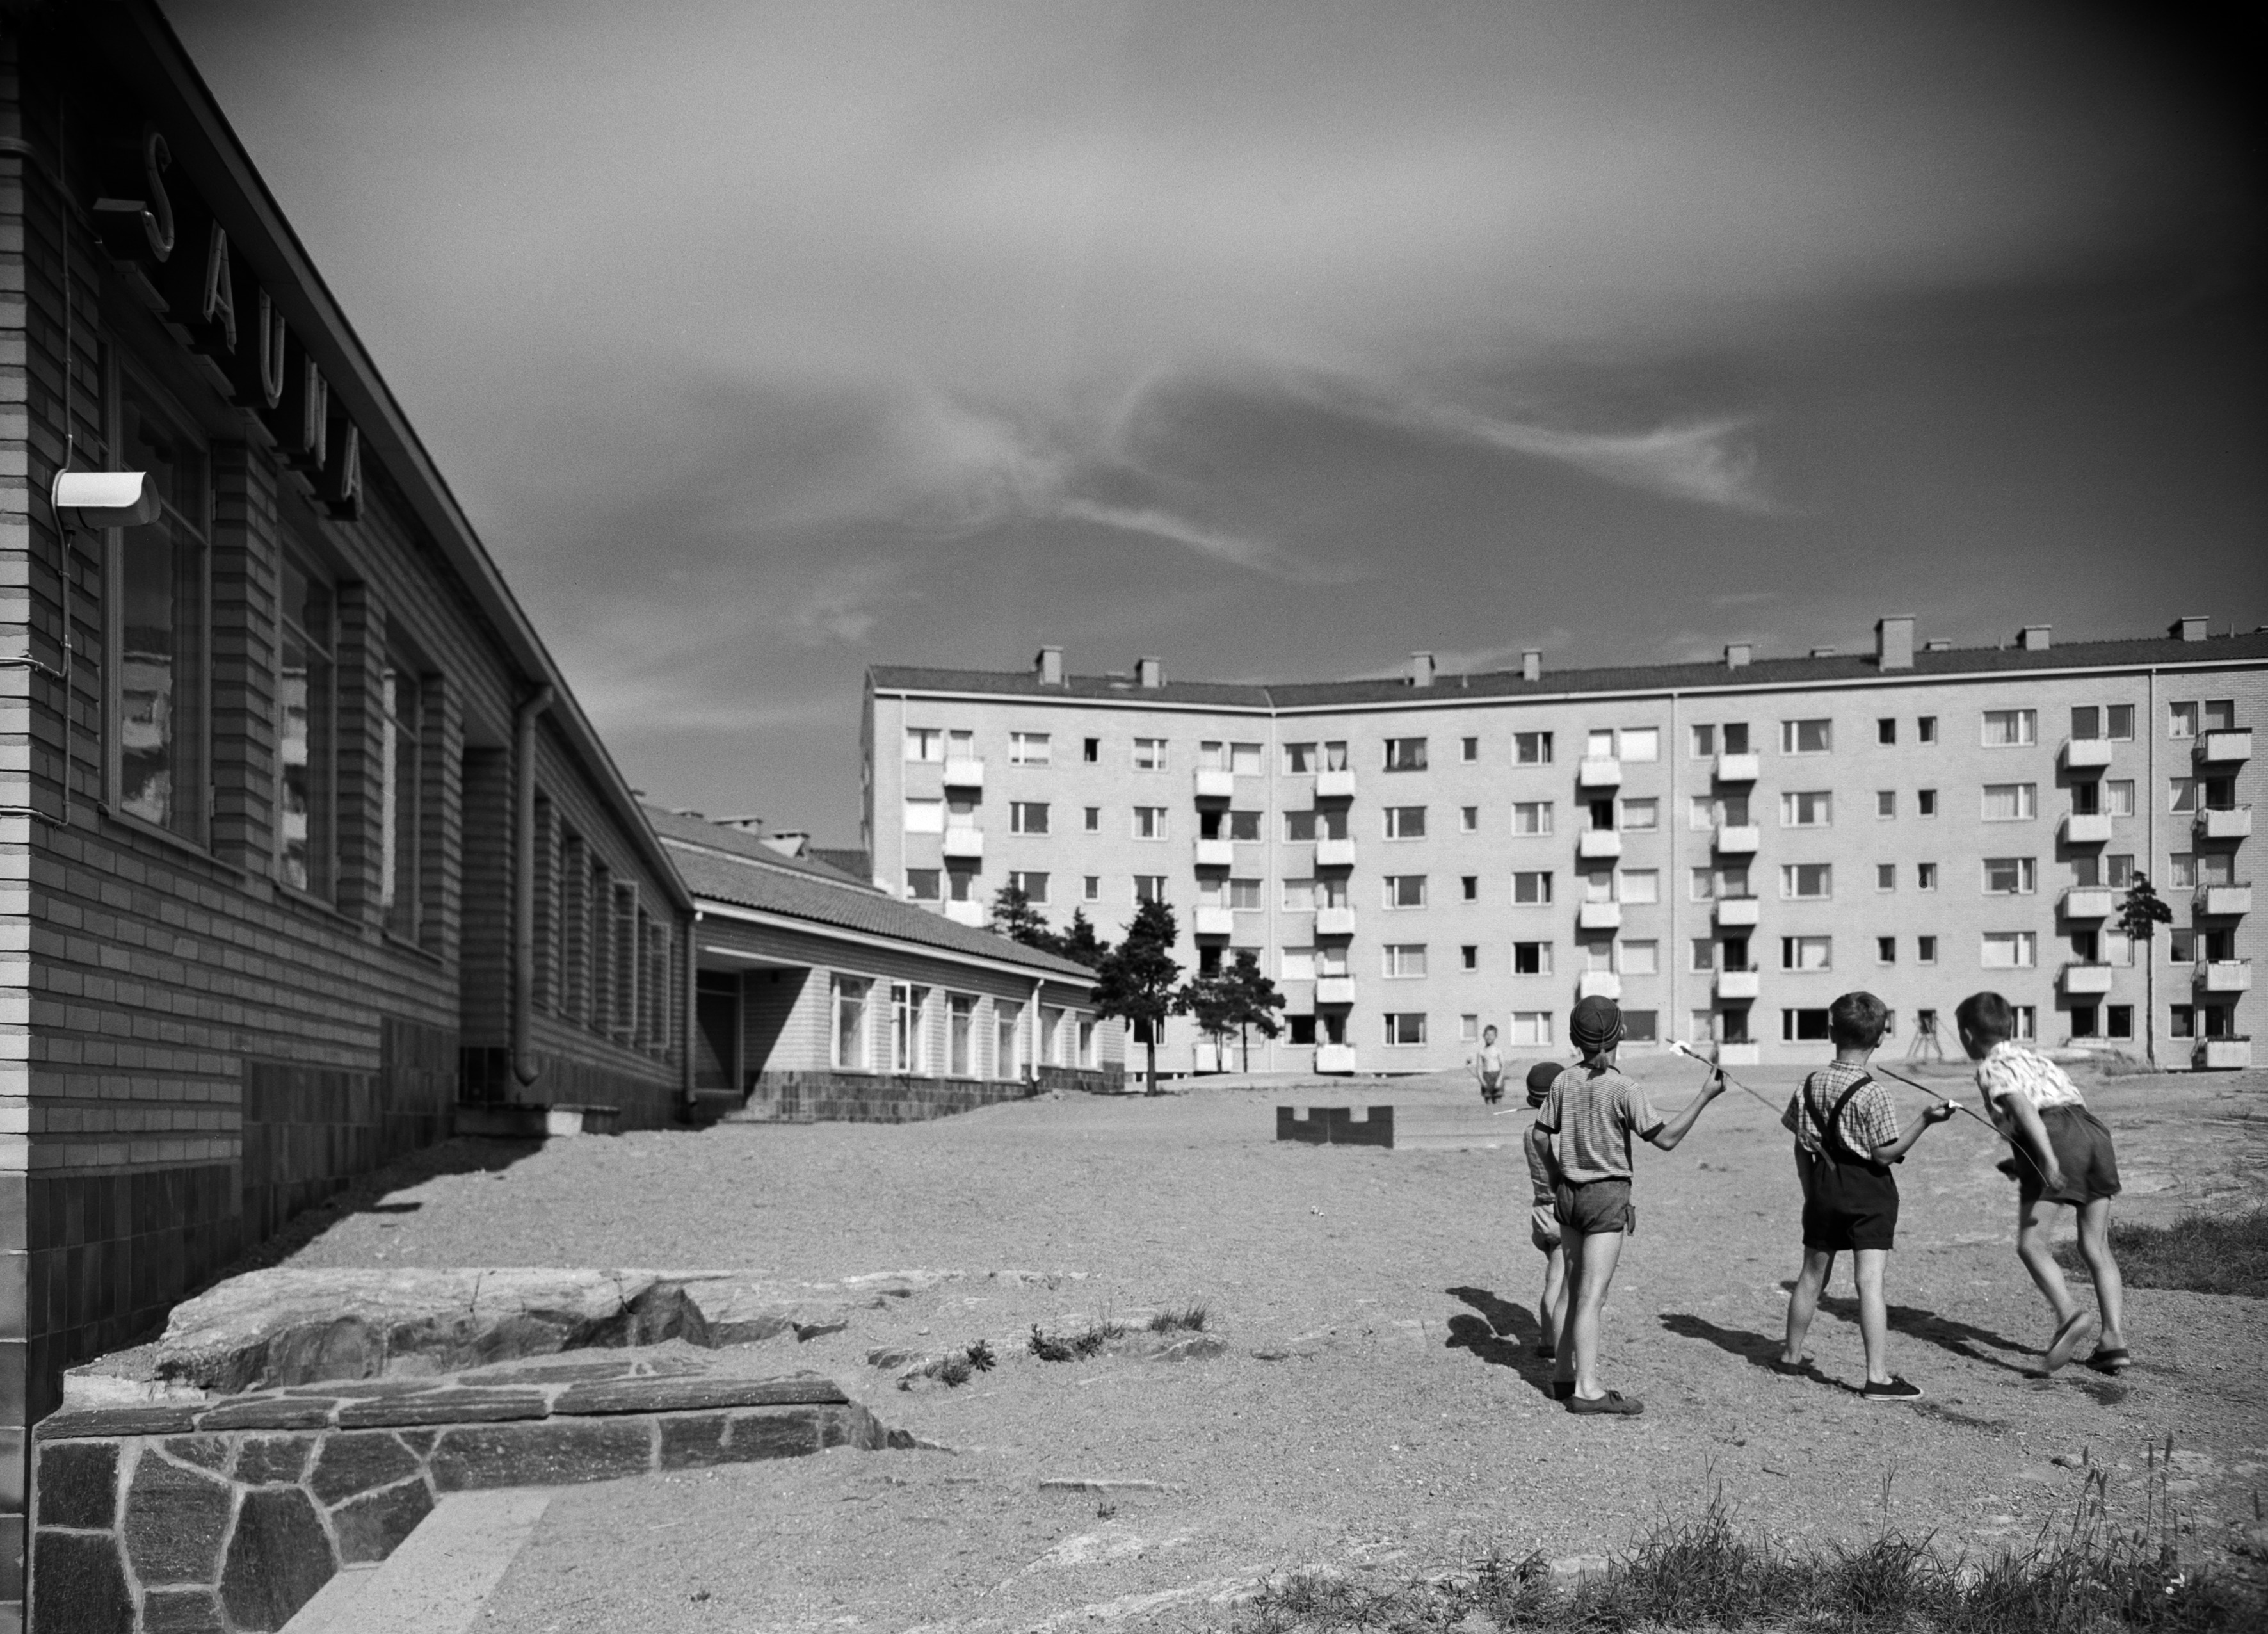 Mannerheimintie 93 / Lehtikuusentie 2. Asuntoyhteistalo Oy. Rakennuksen on suunnitellut Olli Saijonmaa, valmistunut 1953. Pojat leikkivät keihäänheittoa rakennuksen pihalla. Kuva on otettu pihan pohjoisosasta koilliseen päin. Vasemmalla olevassa piharakennuksessa on sauna.